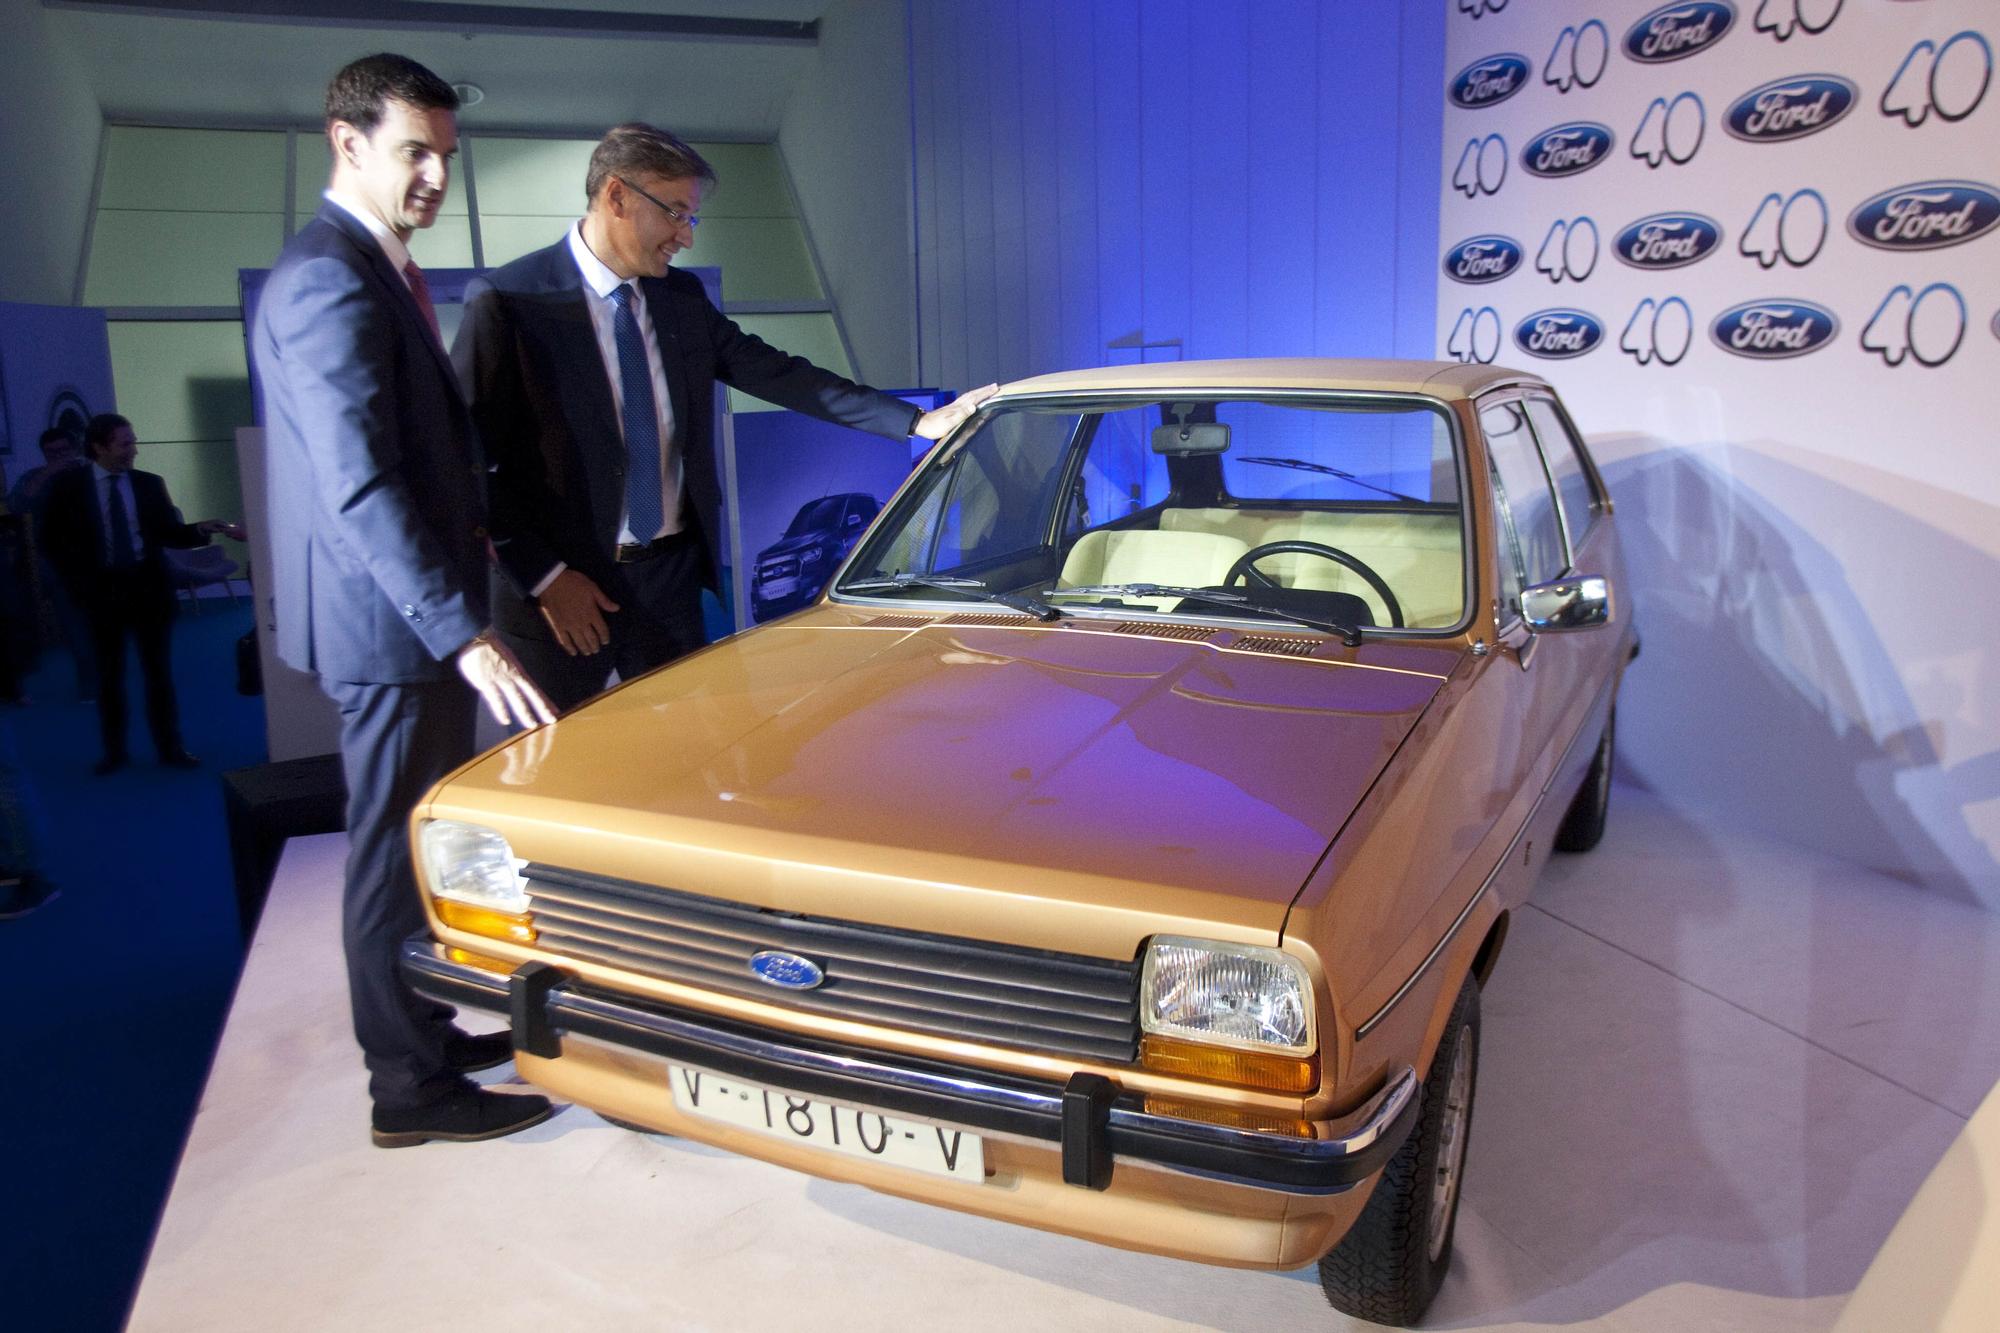 46 años de Ford en la Comunidad Valenciana en imágenes